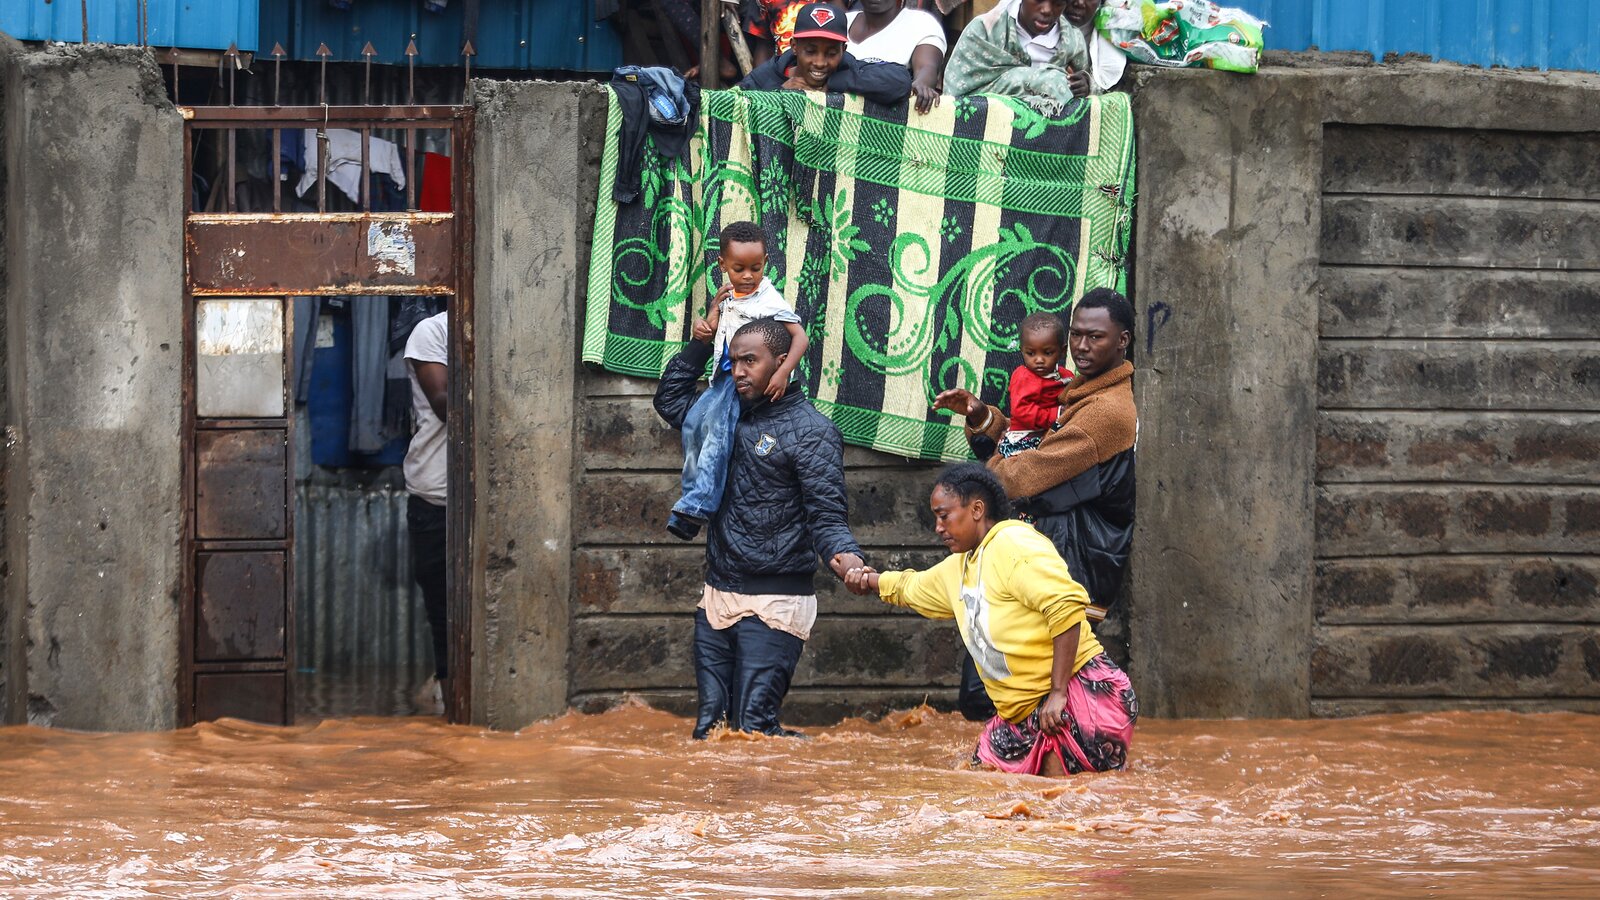 Şiddetli yağışlar sebebiyle Kenya'da sel felaketi meydana geldi. Selde hayatını kaybedenlerin sayısı 169'a ulaştı.